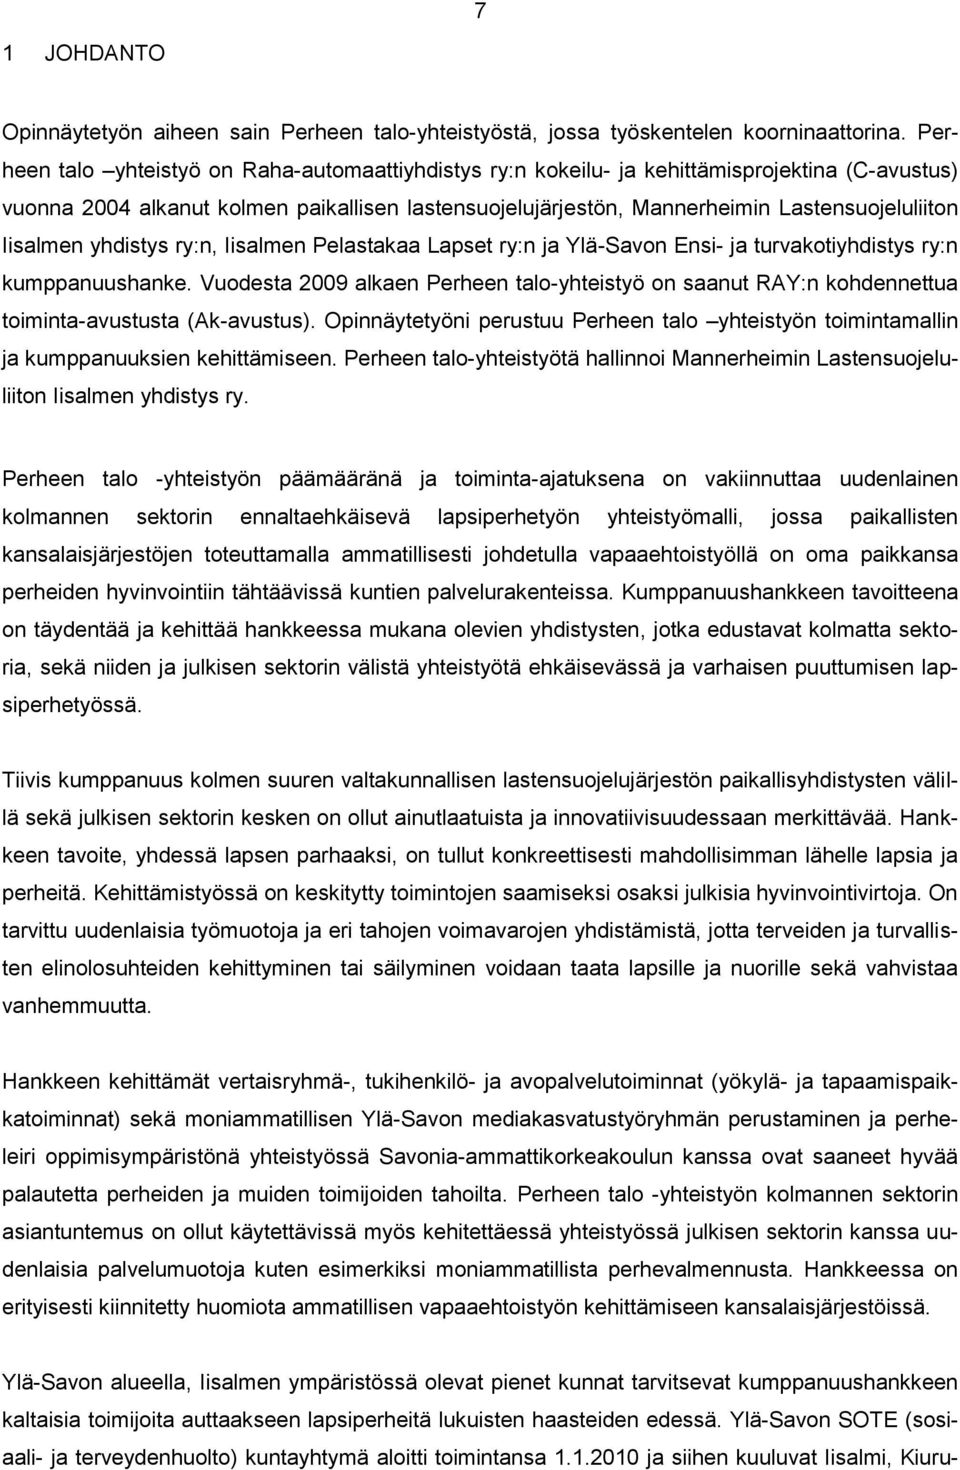 Iisalmen yhdistys ry:n, Iisalmen Pelastakaa Lapset ry:n ja Ylä-Savon Ensi- ja turvakotiyhdistys ry:n kumppanuushanke.